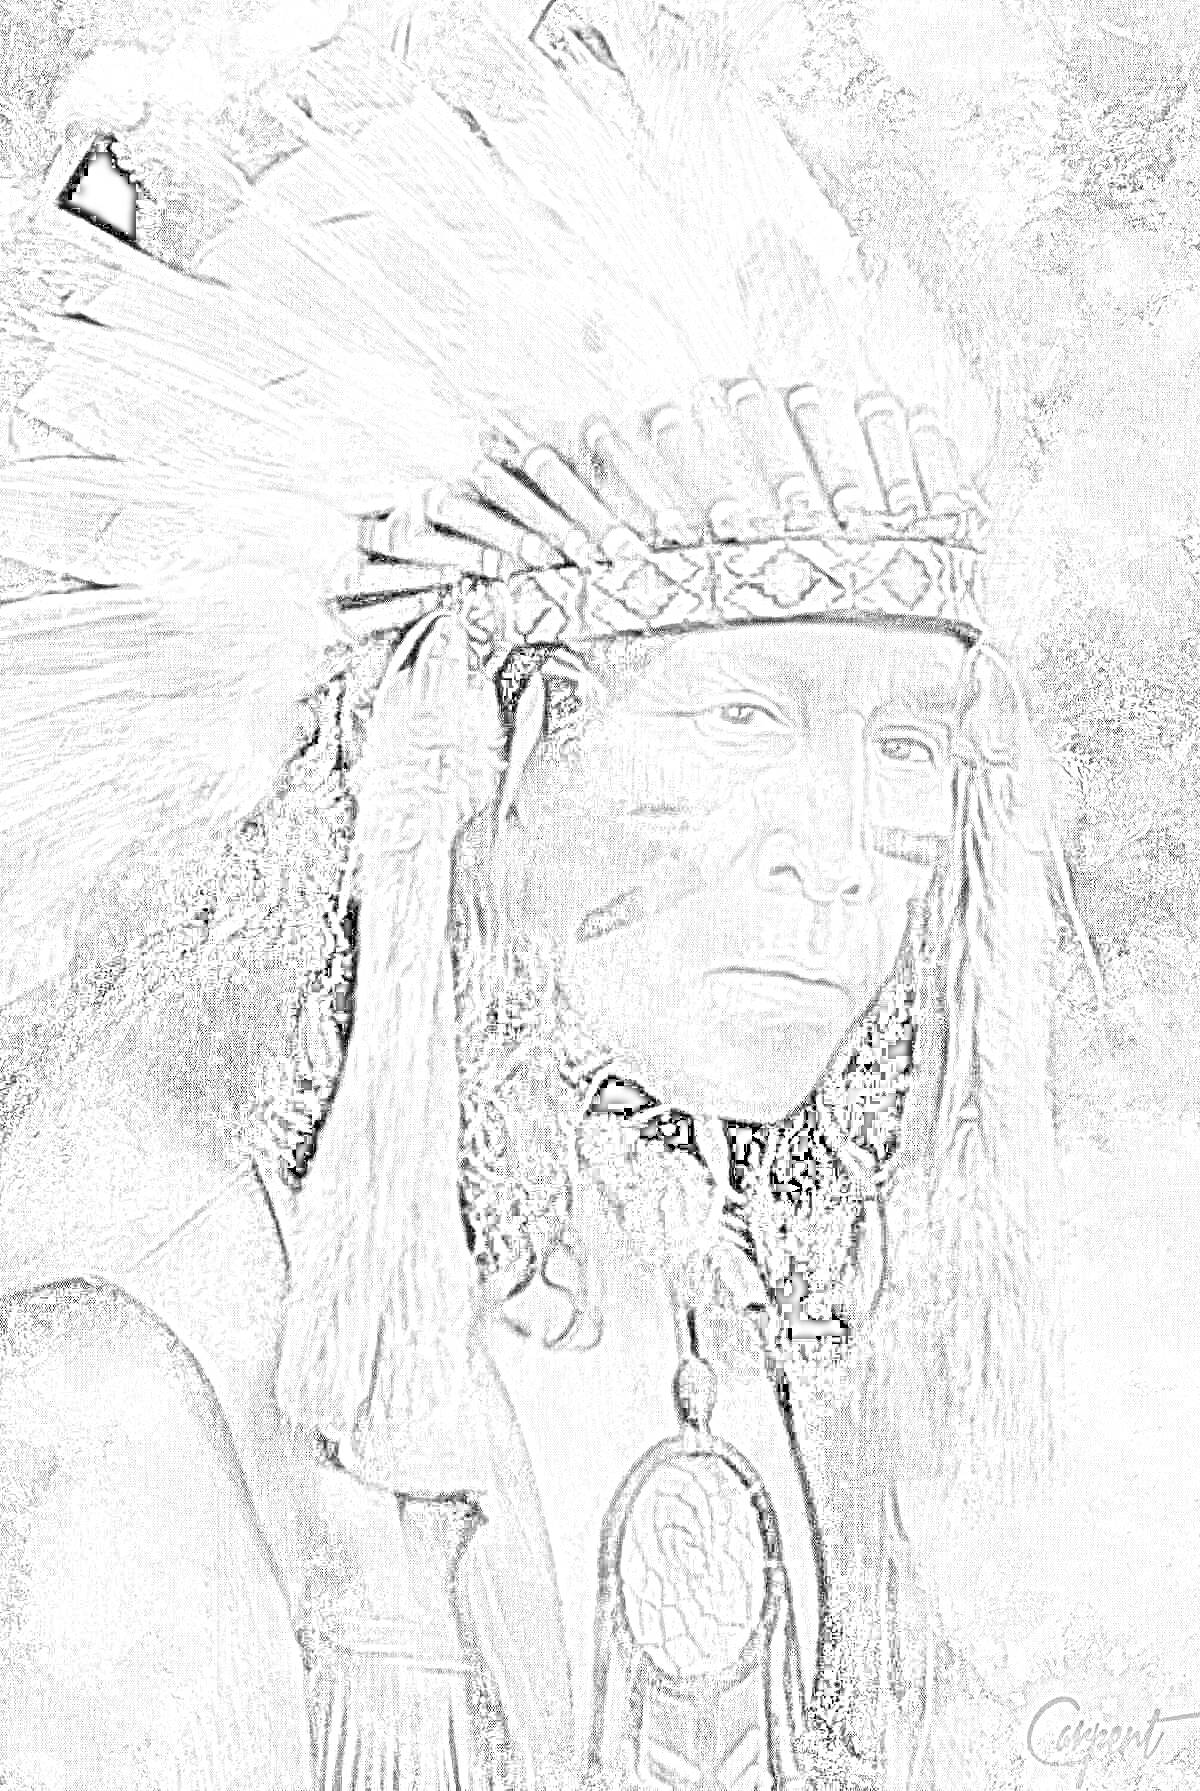 Портрет индейца с боевой раскраской, вождь в головном уборе с перьями, амулет на груди